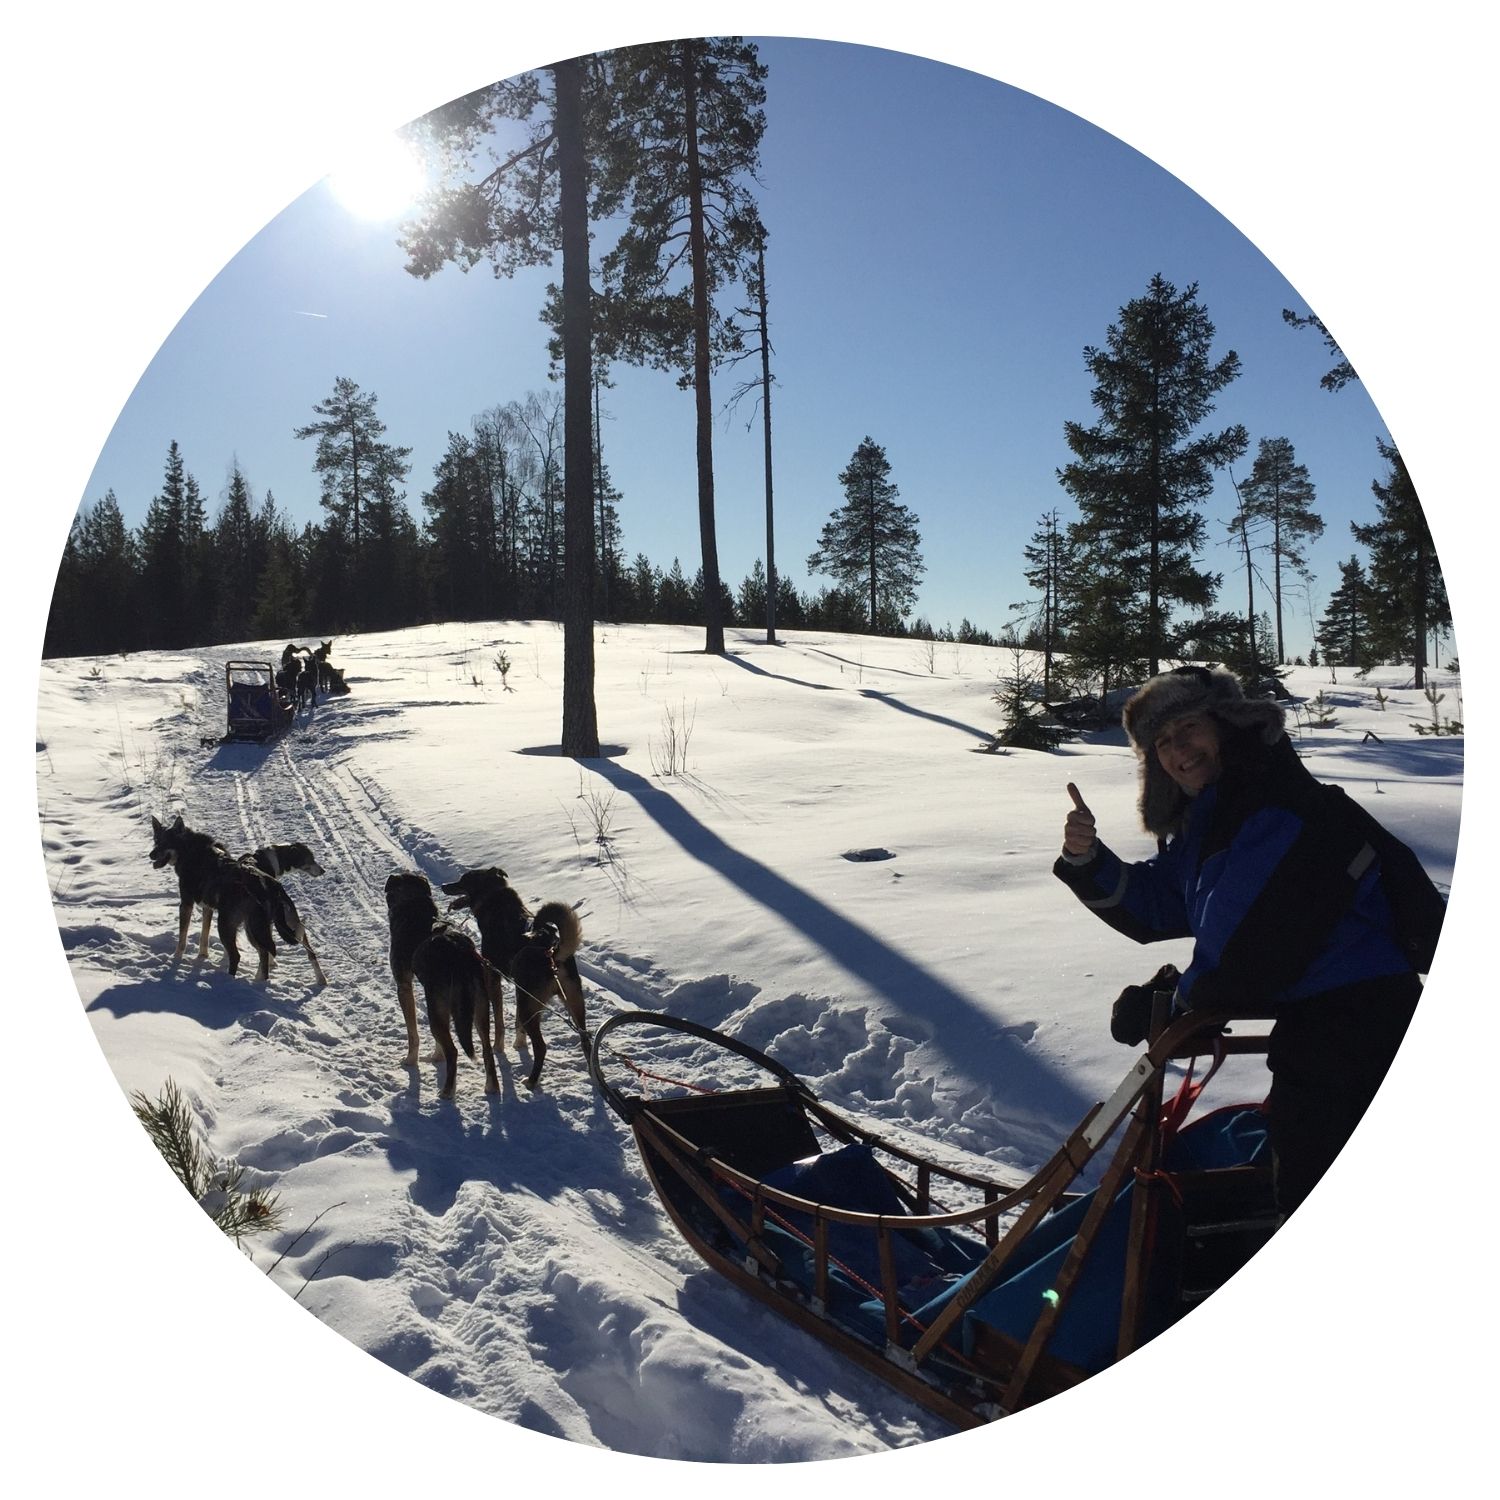 Voyage en Suède sur mesure avec l'avis de Corinne, aventure en traîneau à travers la forêt enneigée.